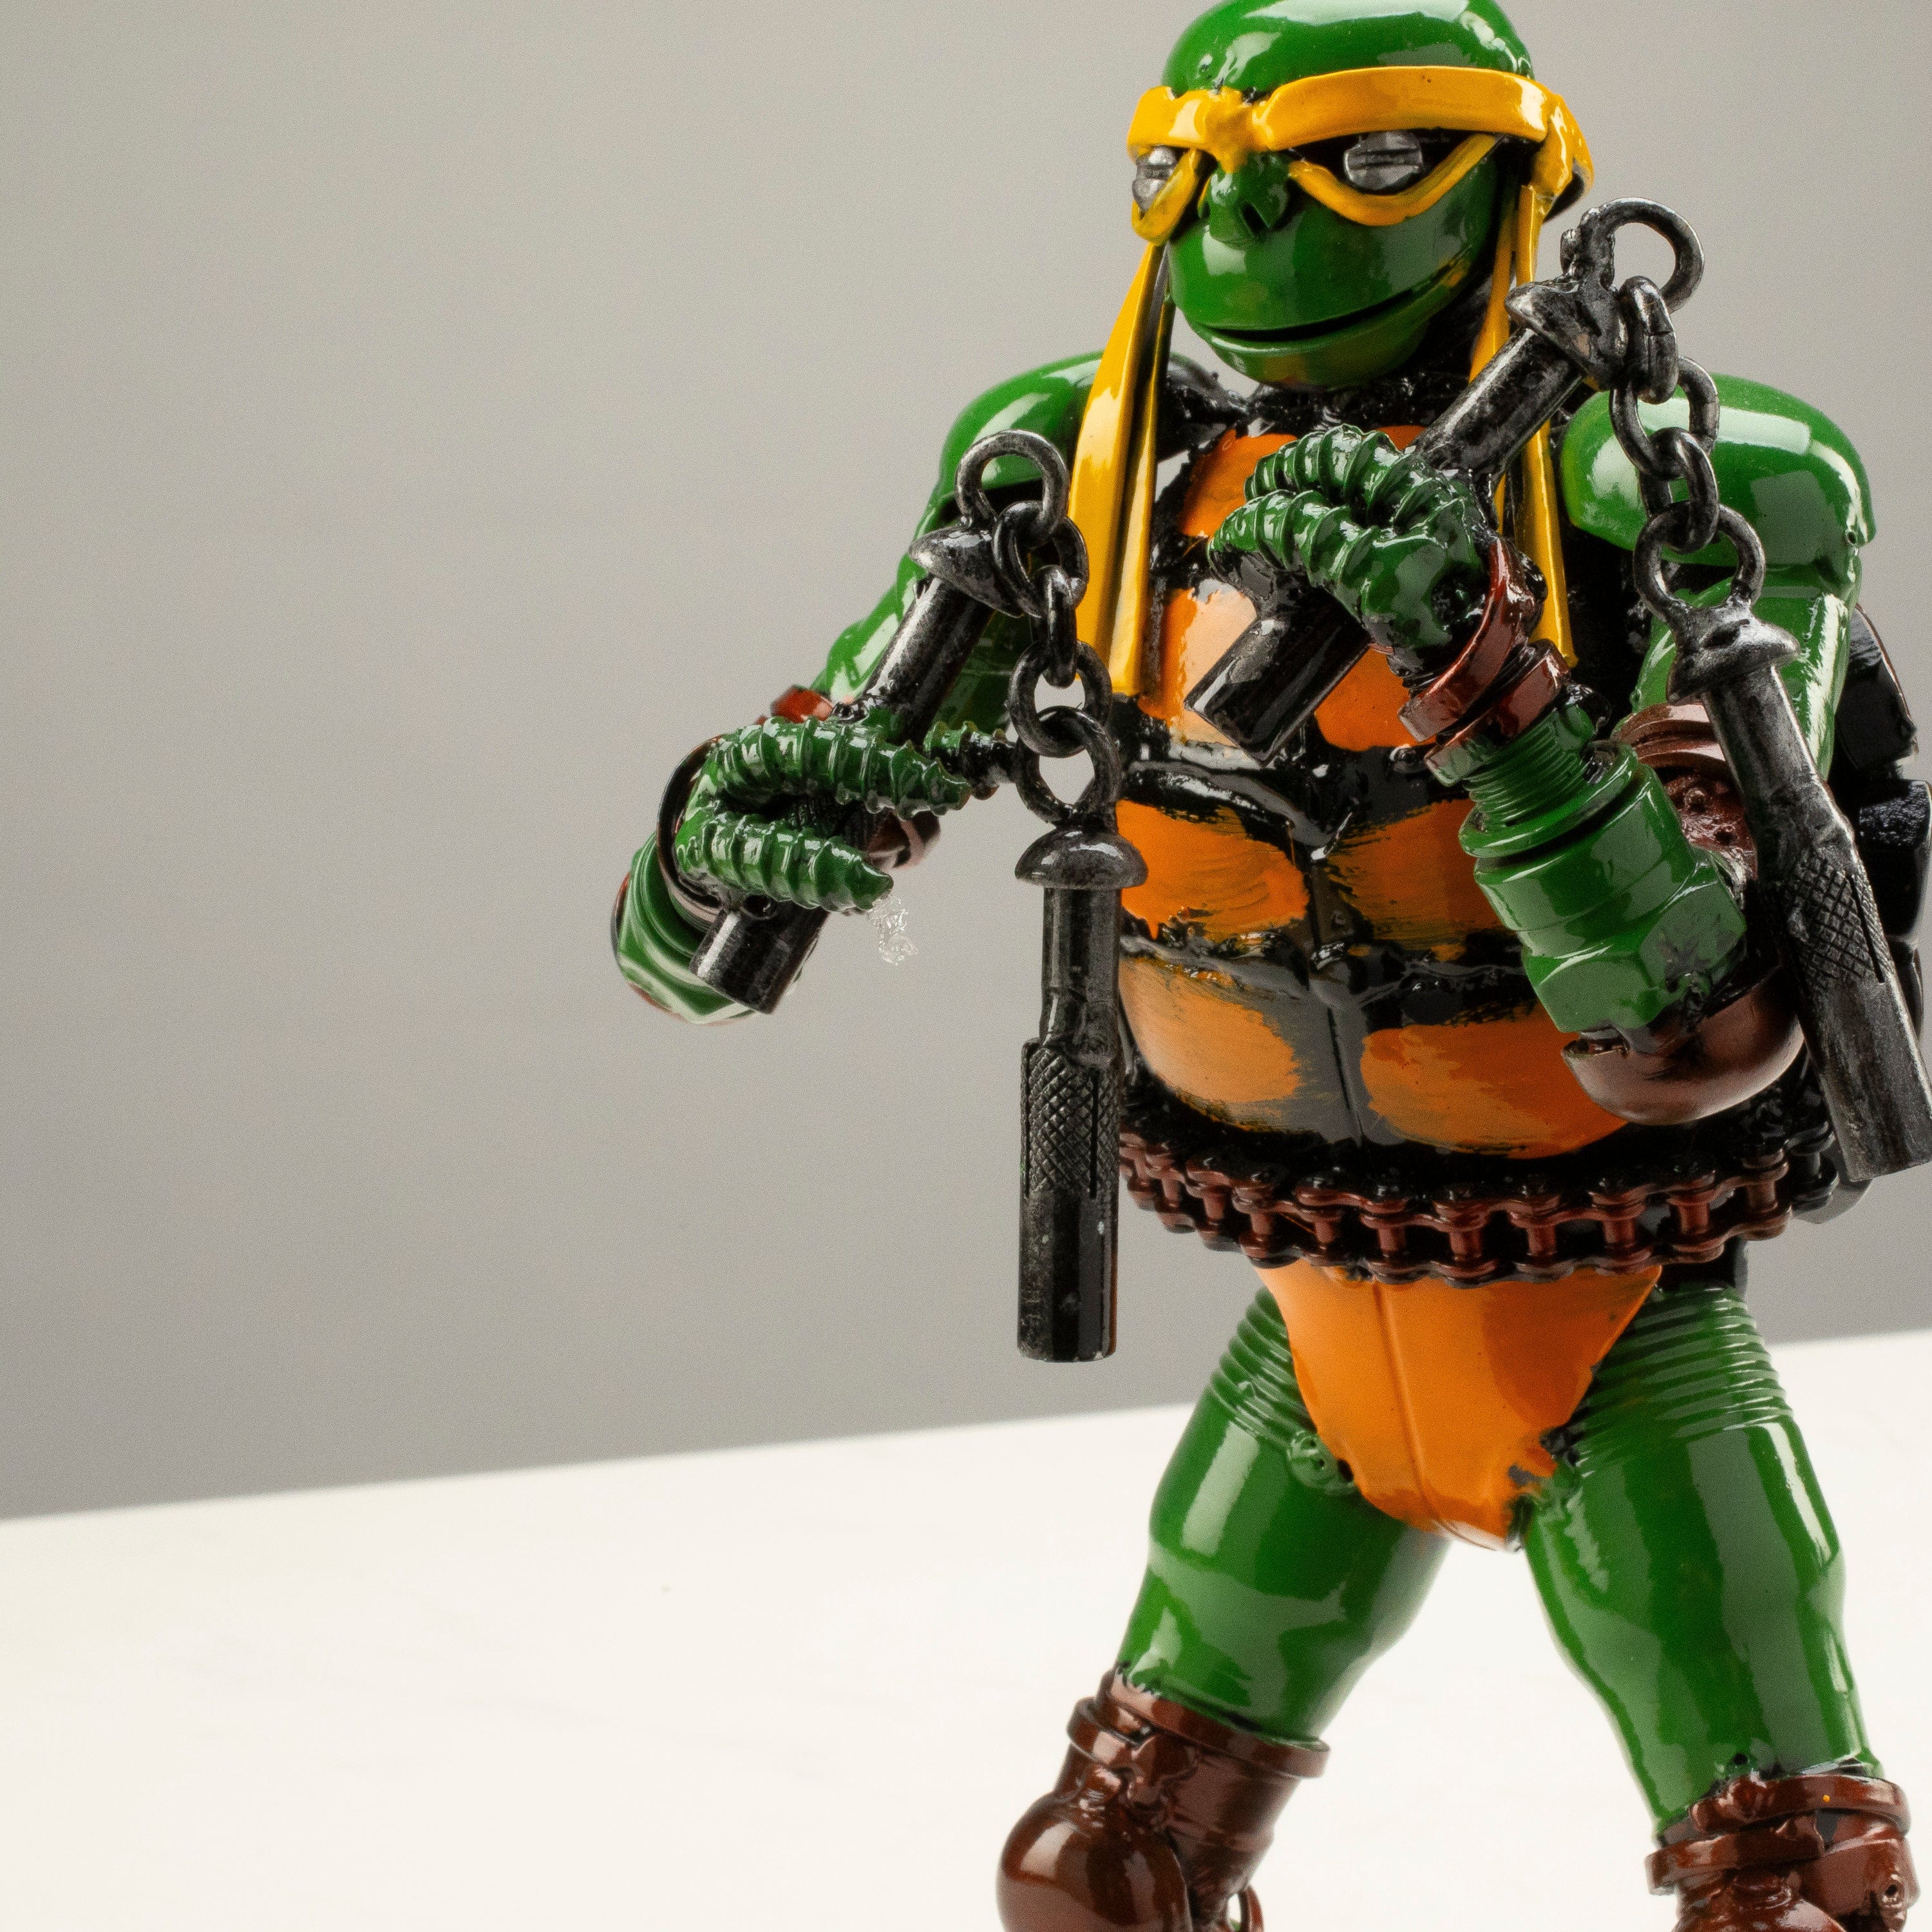 Kalifano Recycled Metal Art 9.5" Michelangelo Ninja Turtle Inspired Recycled Metal Sculpture RMS-600NTM-N